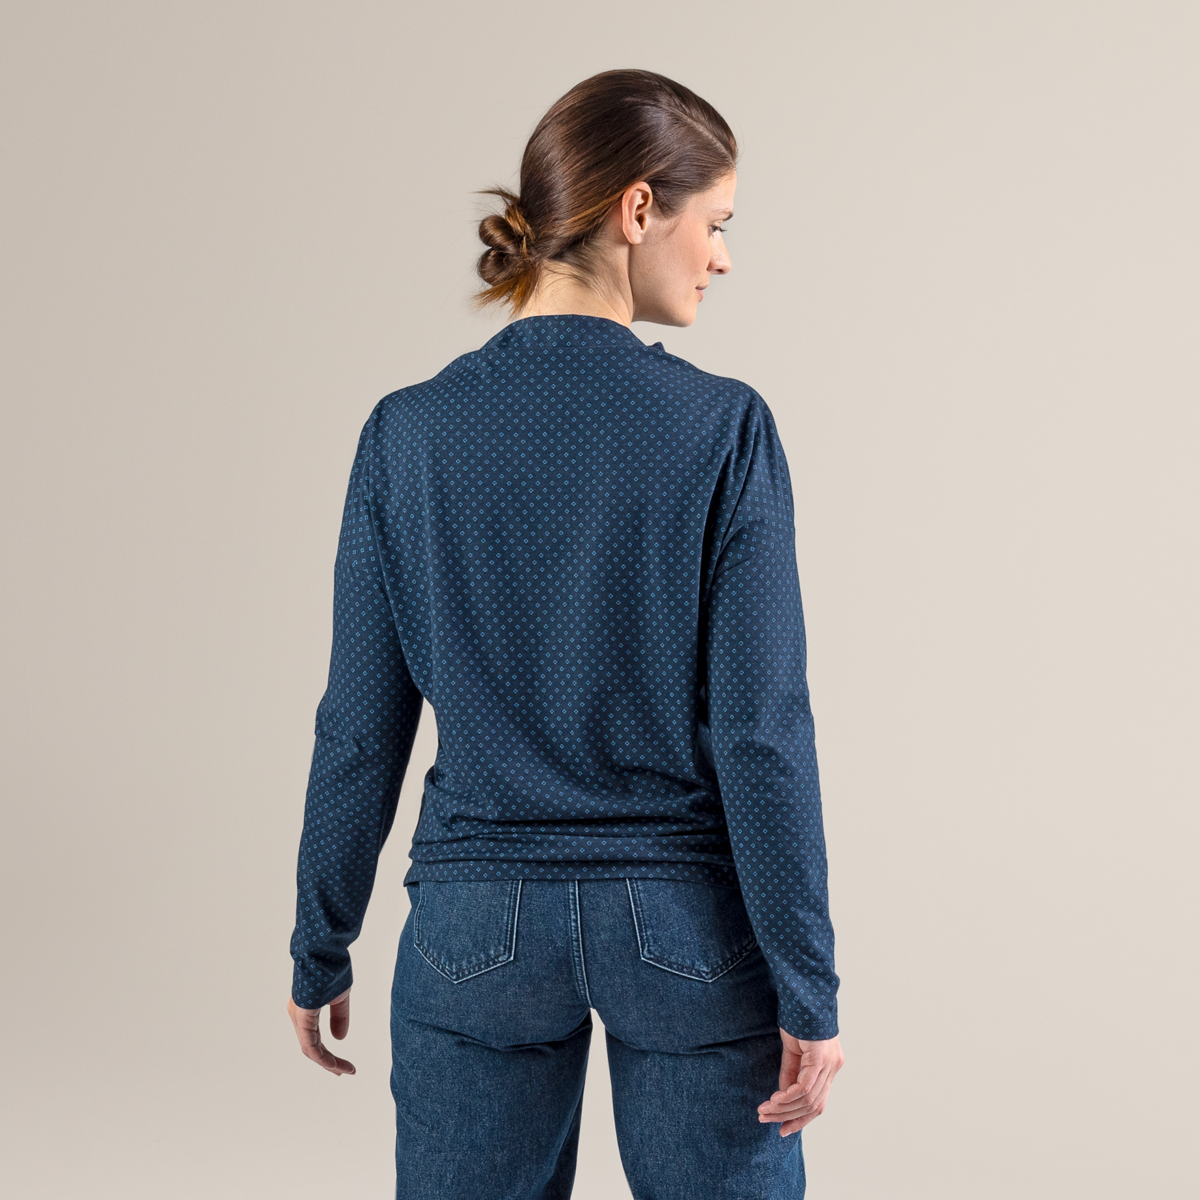 Blue Women Long-sleeved shirt